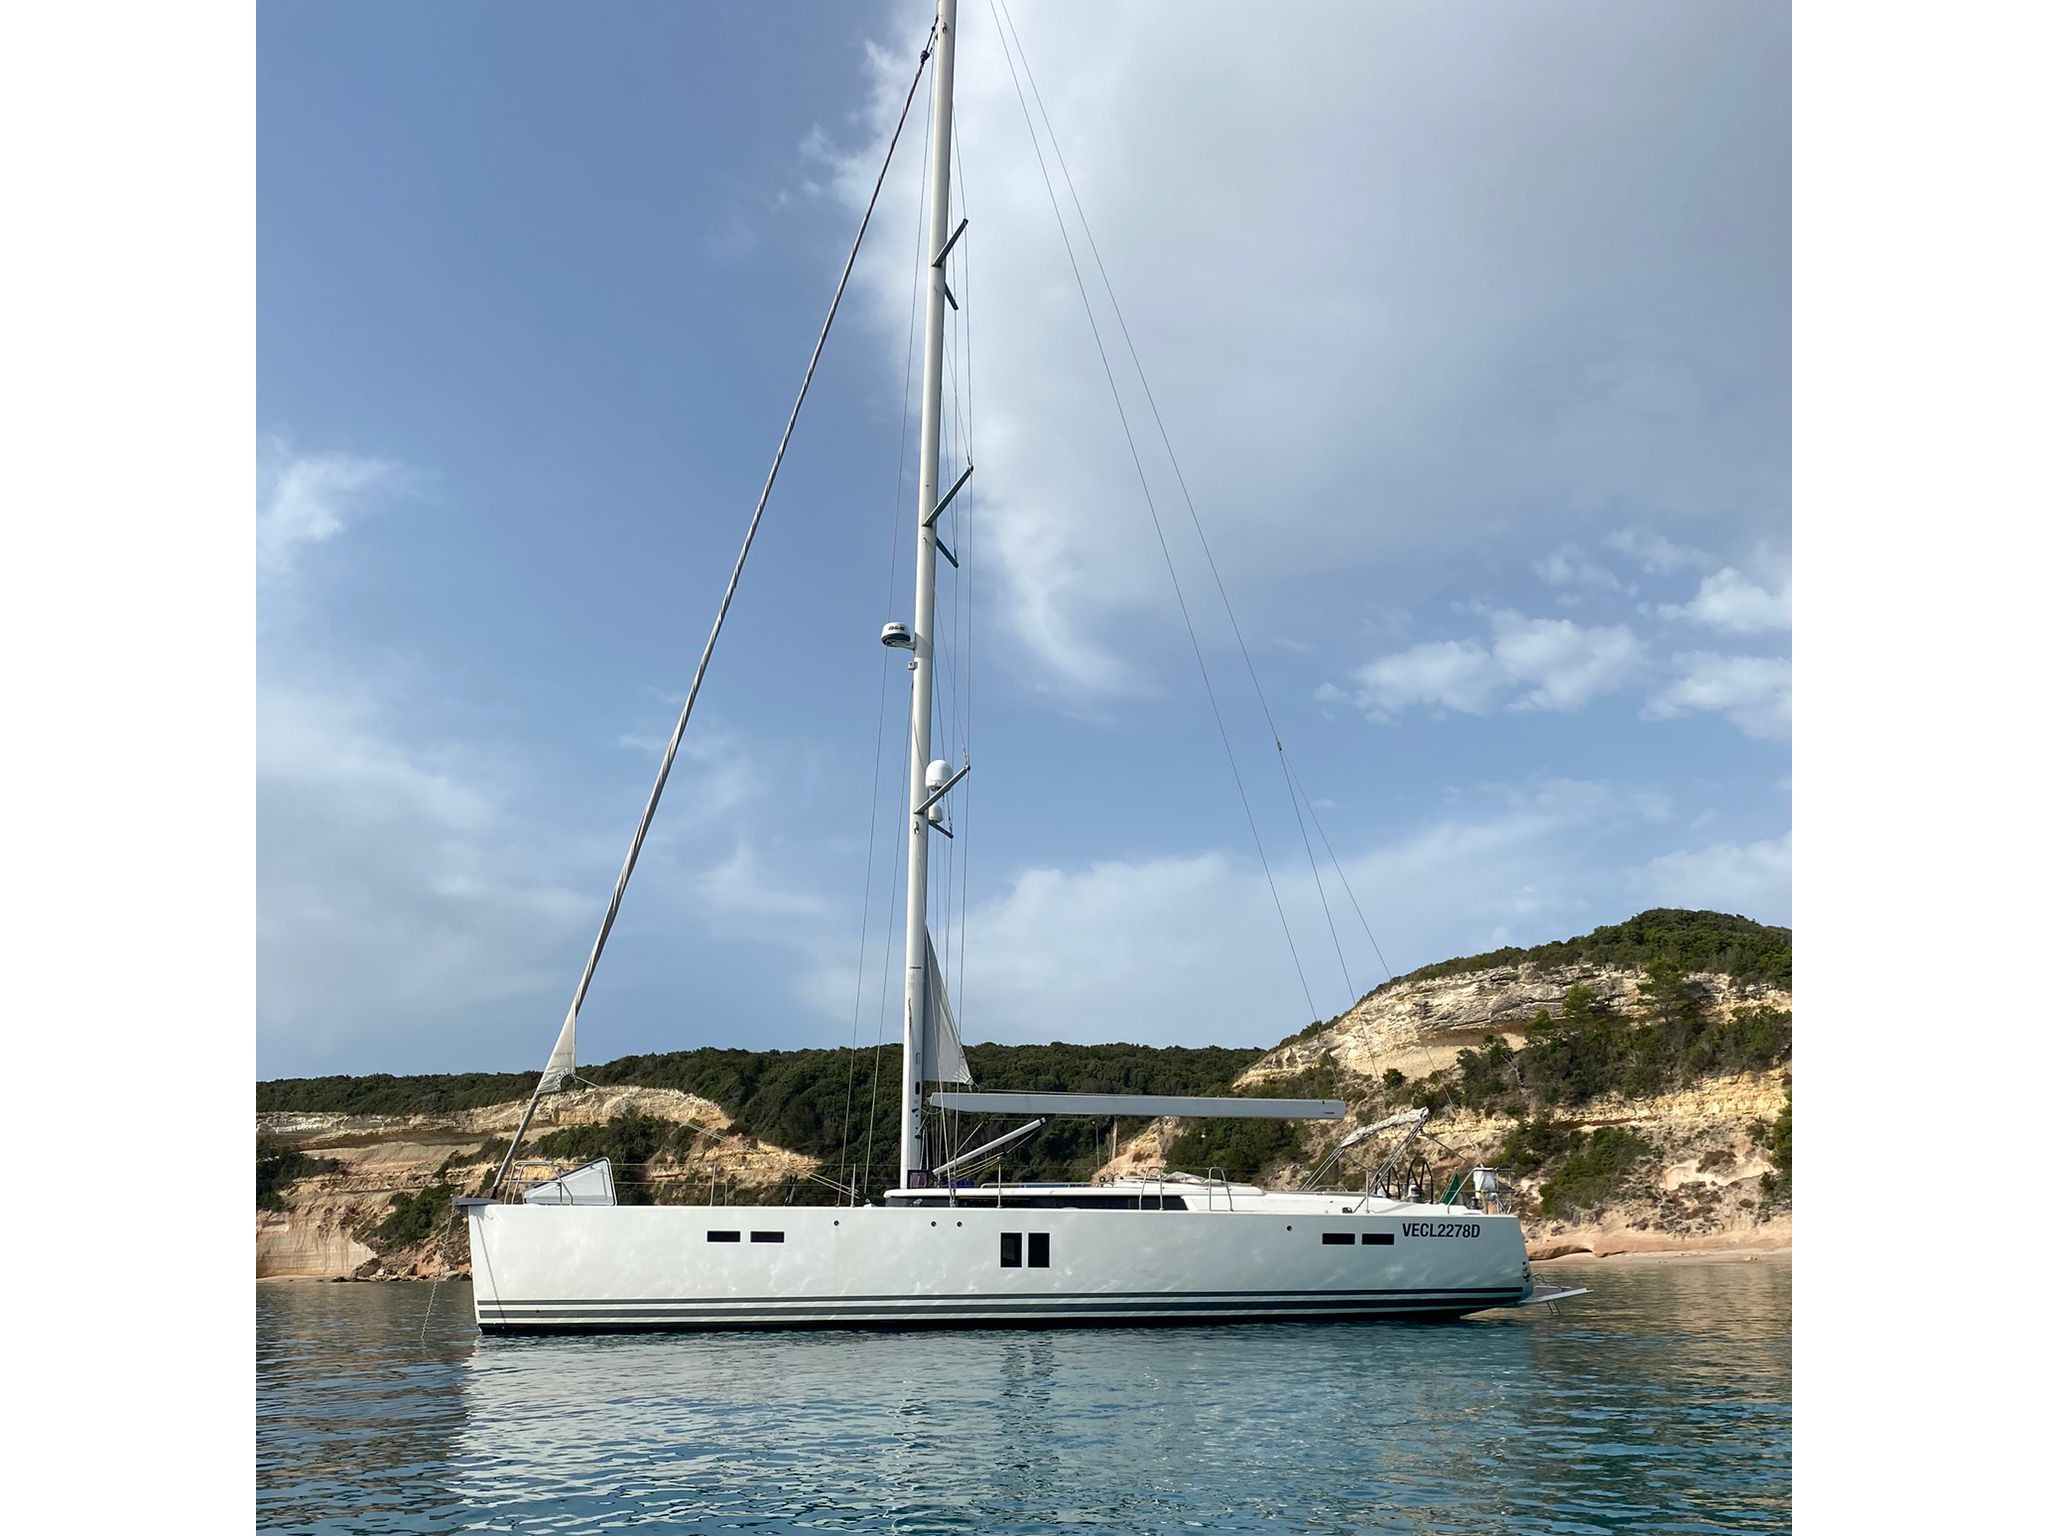 Hanse 545 - Yacht Charter Golfo Aranci & Boat hire in Italy Sardinia Costa Smeralda Golfo Aranci Marina dell'Isola 2